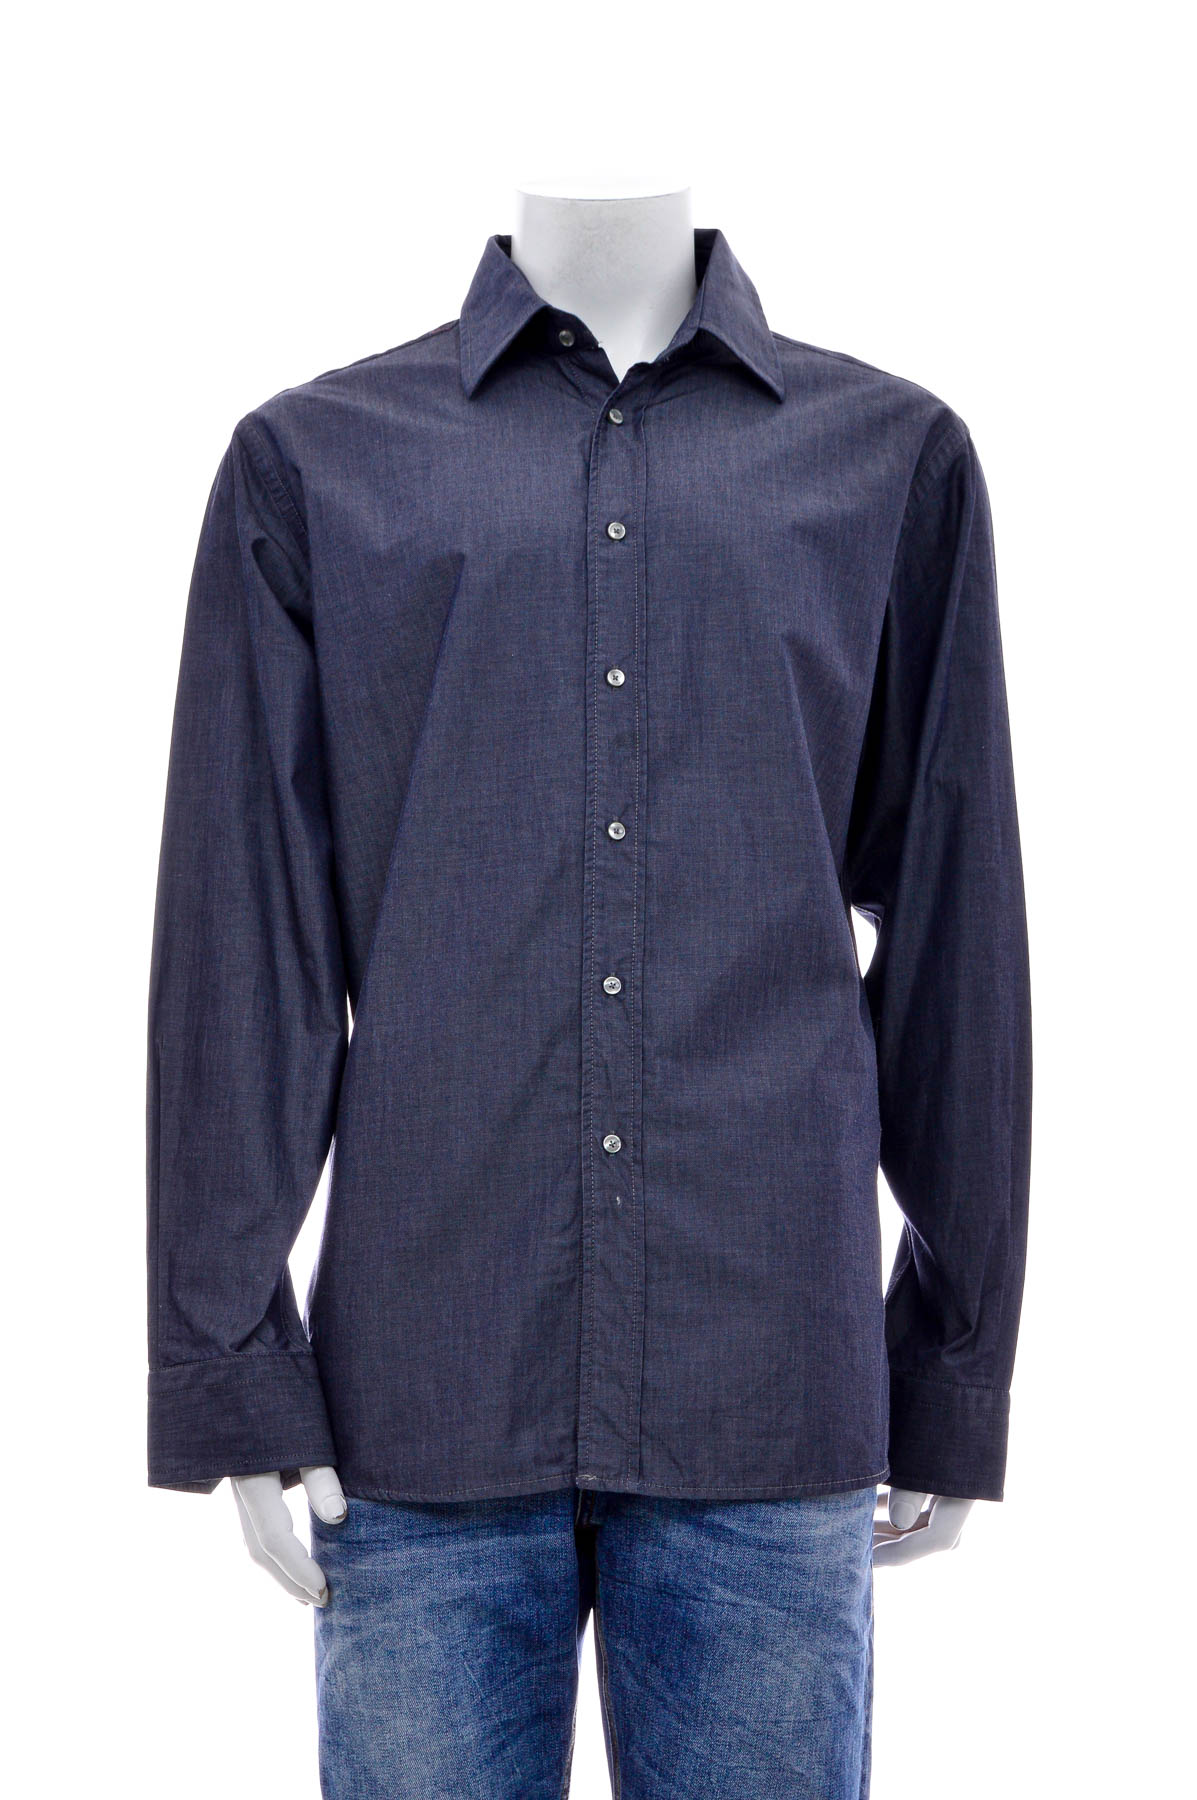 Ανδρικό πουκάμισο - Carl Gross - 0